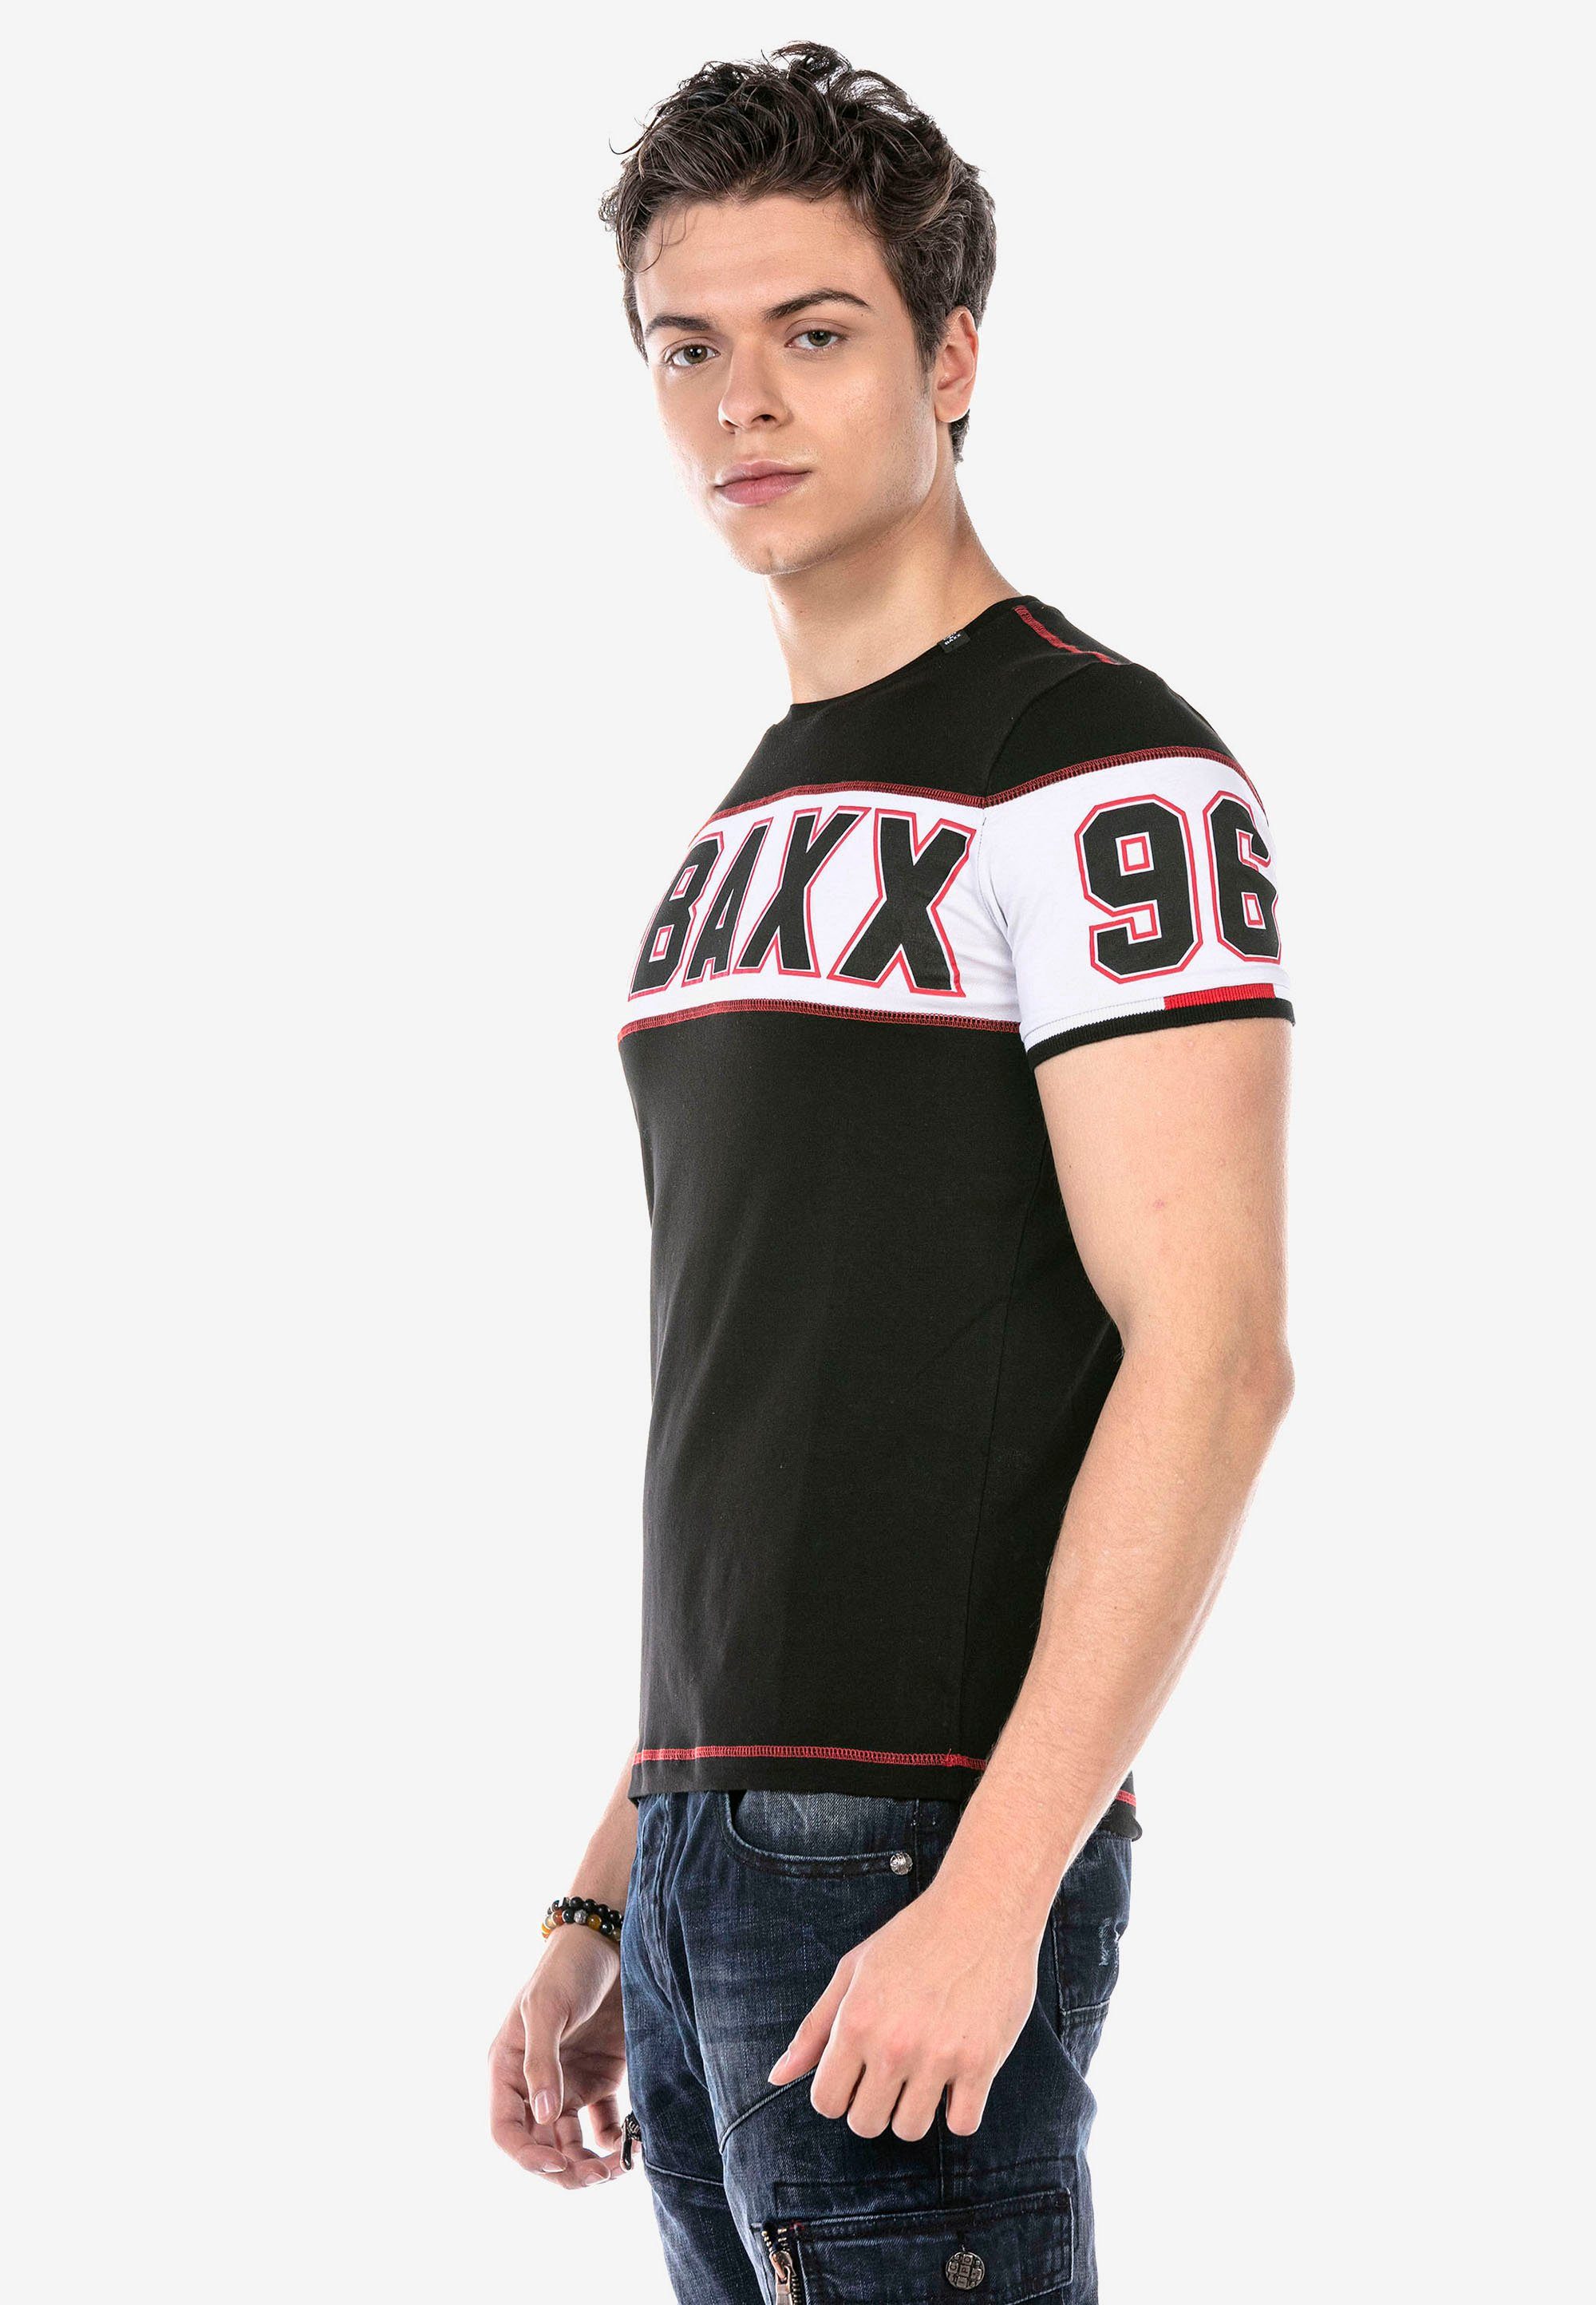 T-Shirt mit Baxx Print & schwarz auffälligem Cipo